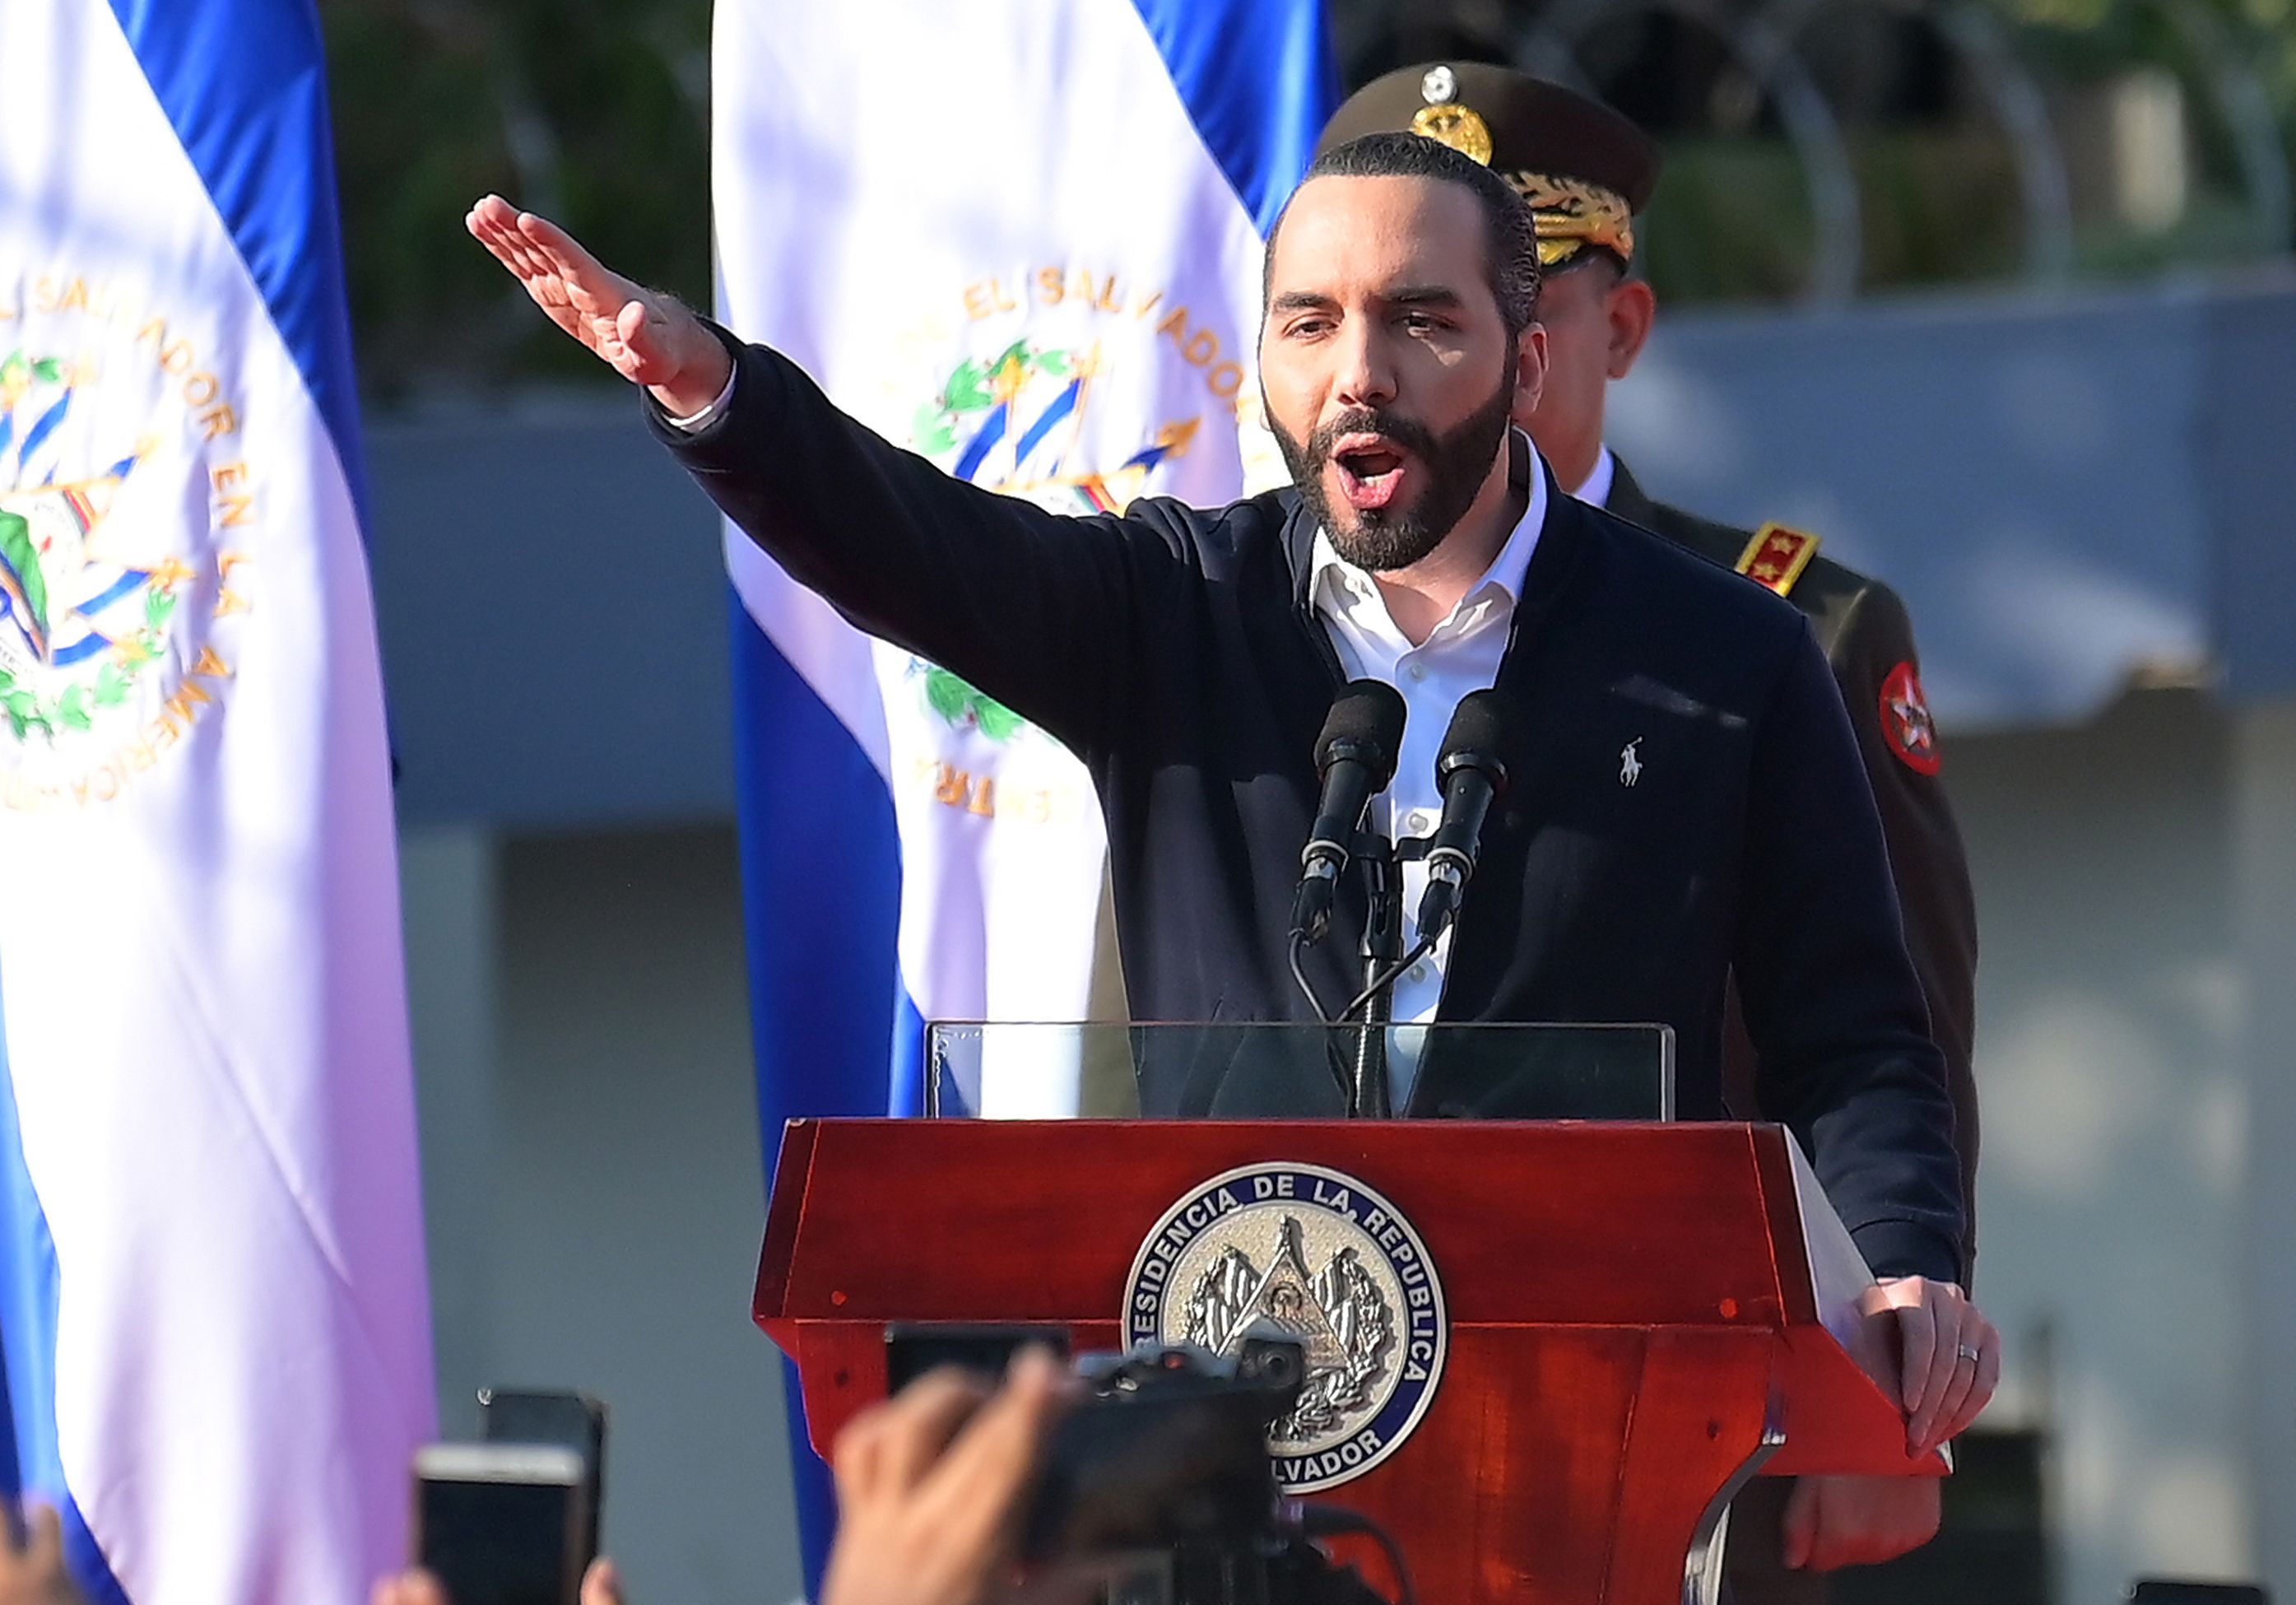 El Gobierno de El Salvador fue acusado por la Fiscalía General de la República de usurpar funciones de la Asamblea Legislativa. (Foto Prensa Libre: Agence France-Presse)